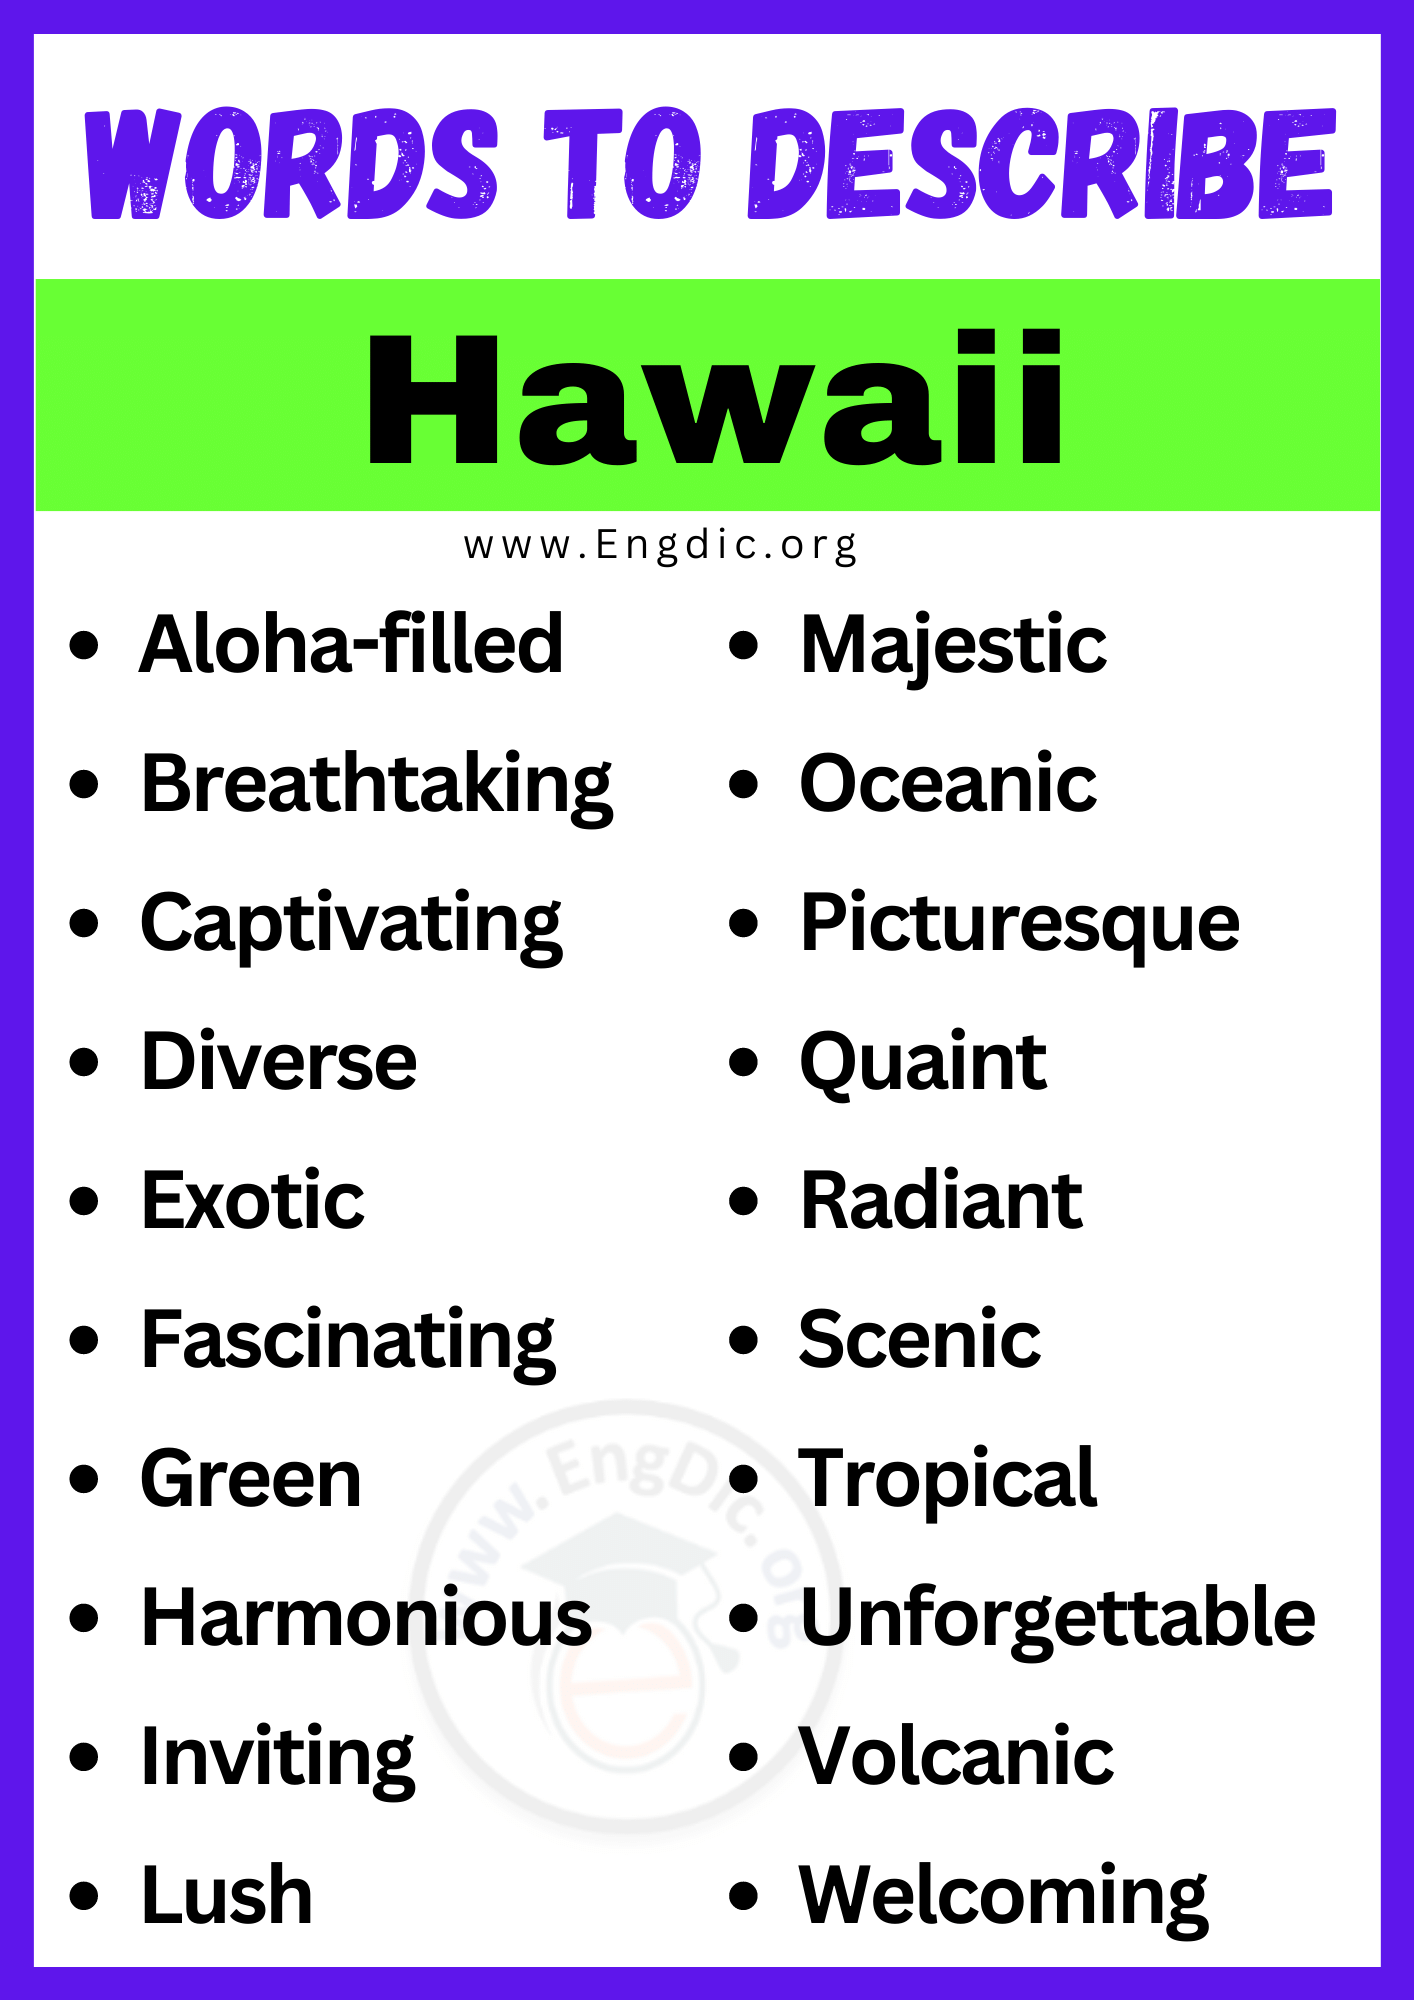 Words to Describe Hawaii